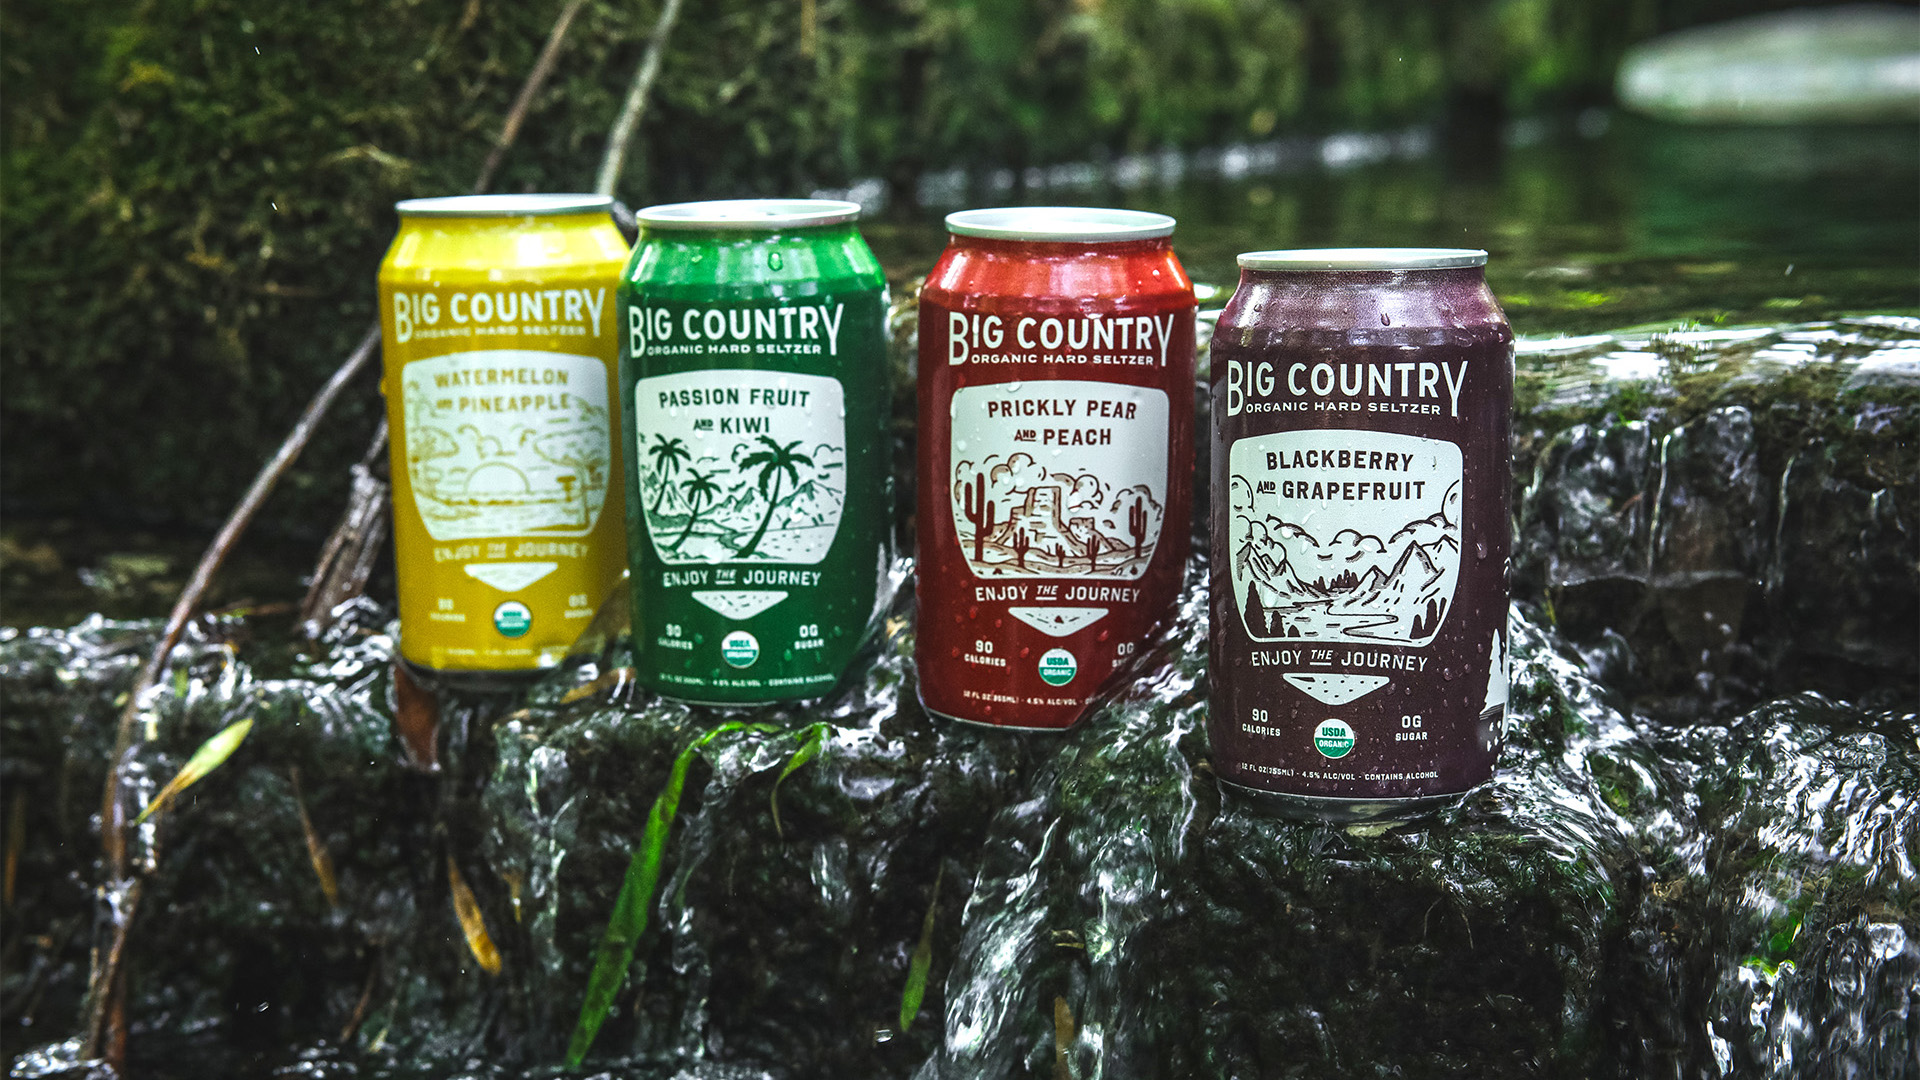 Big Country Organic Brewing Co. は Dropbox のサービスを活用して、ソーシャル メディアを泡立たせるようなブランディングを展開しています。